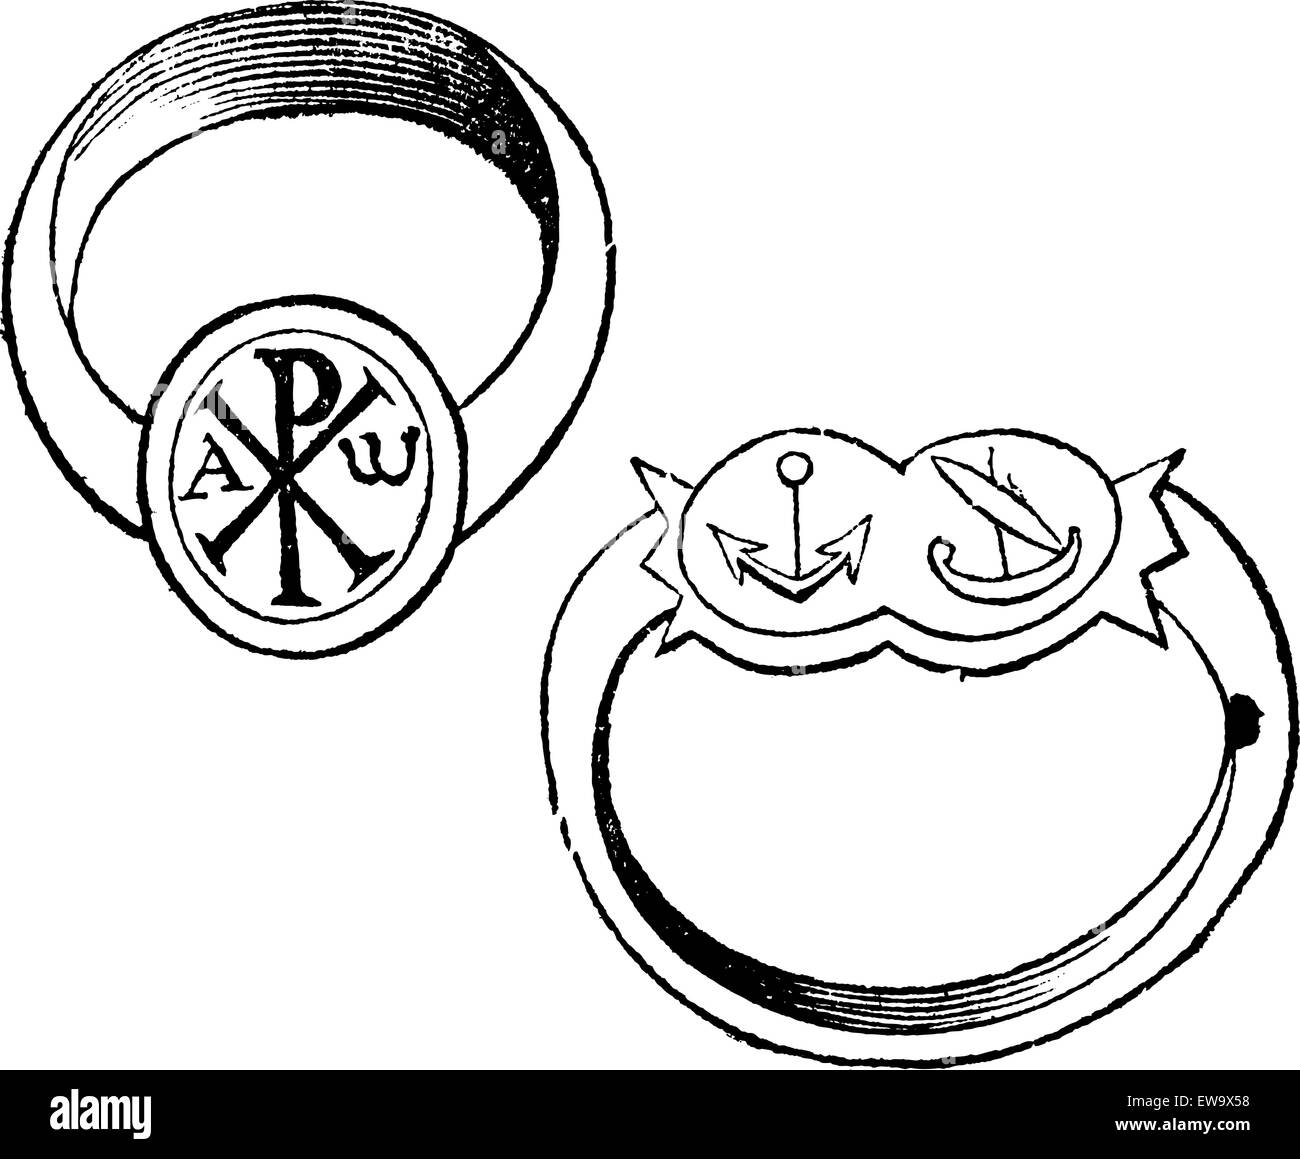 Zwei christliche Symbole vintage bischöflichen Ringe mit Gravur. Alte  eingravierten Abbildung eines bishp oder Erzbischof Ring, mit dem Fisch,  Taube und Monogramm Christi, und das andere mit Fin und Zweig  Stock-Vektorgrafik -